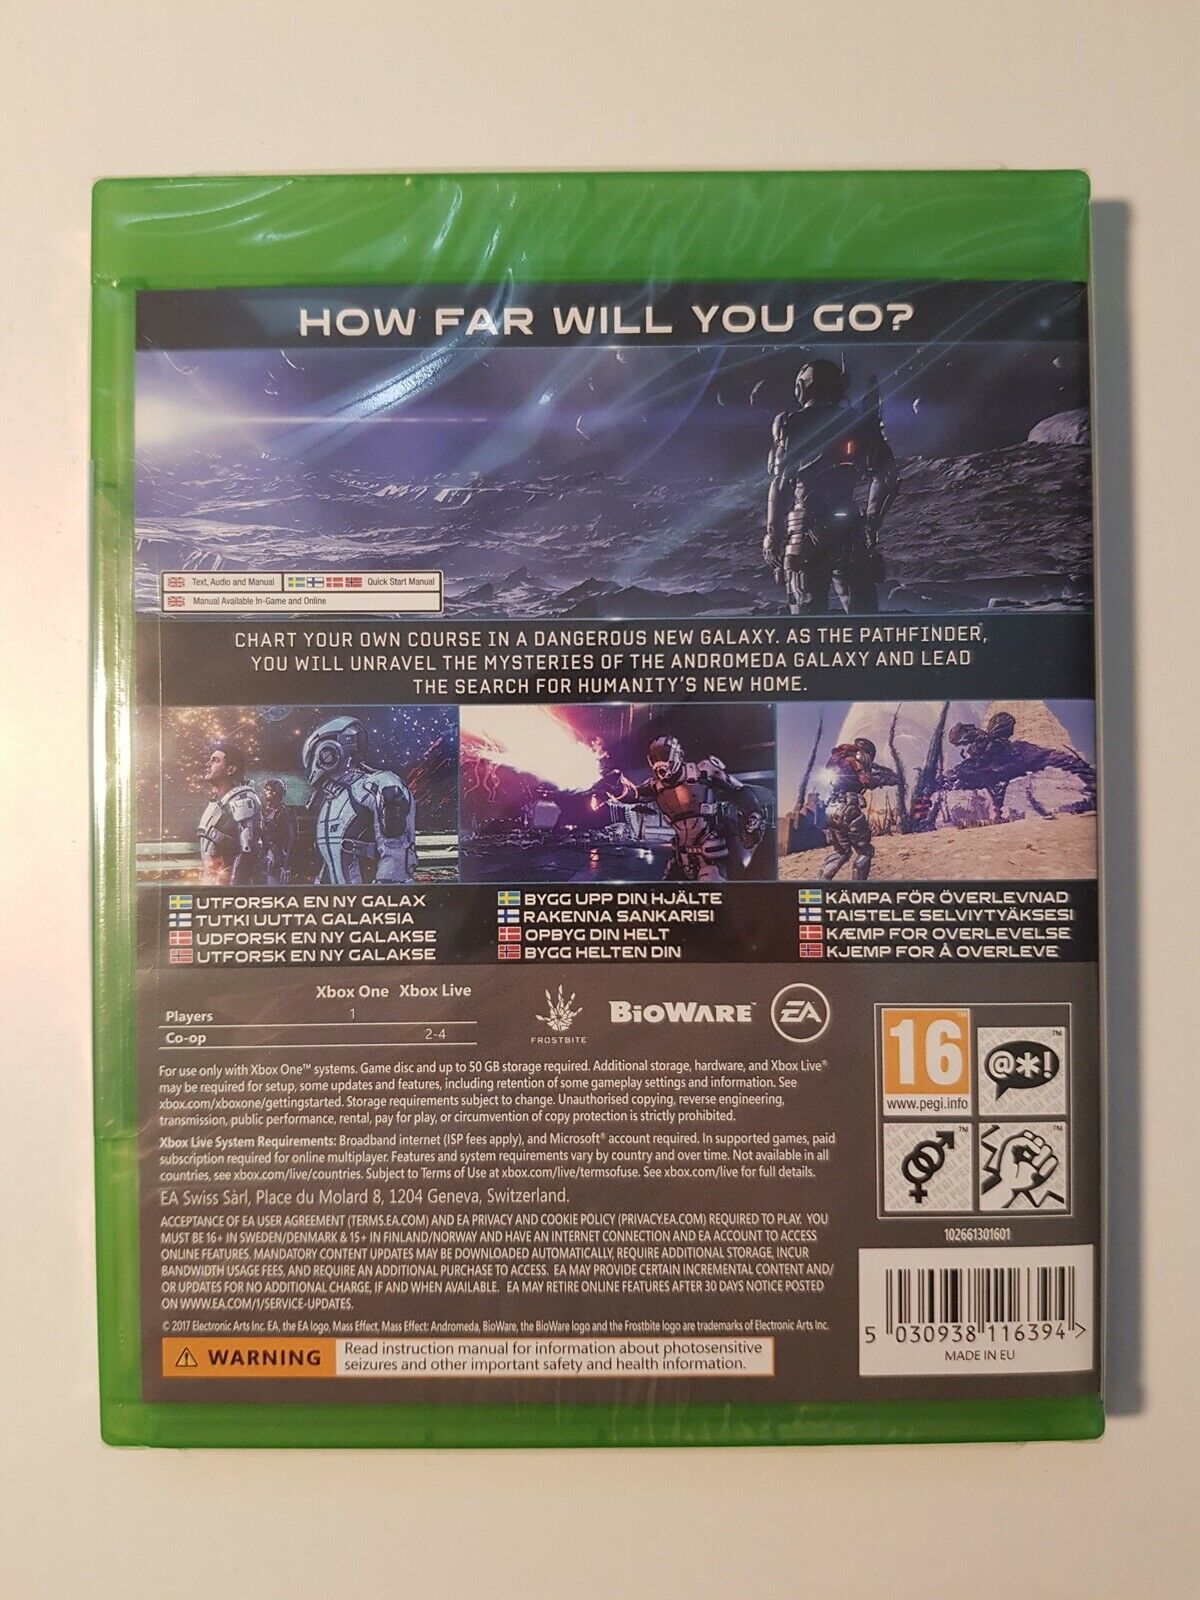 (Nyt i folie) Mass Effect, Xbox One